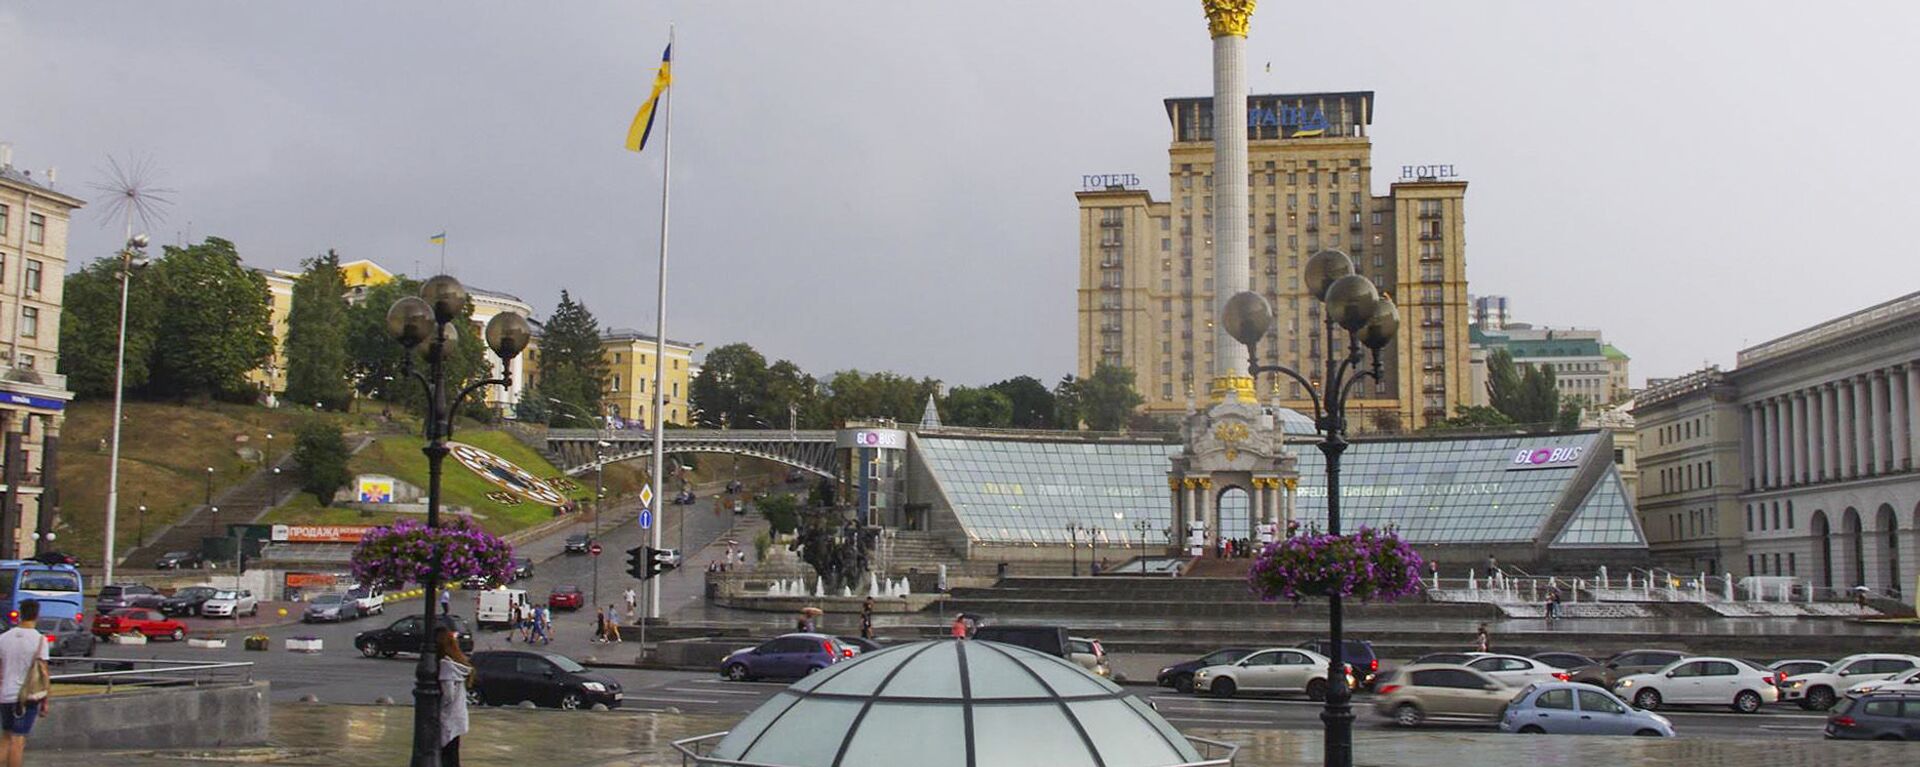 Площадь Независимости в центре Киева - Sputnik Ўзбекистон, 1920, 30.11.2021